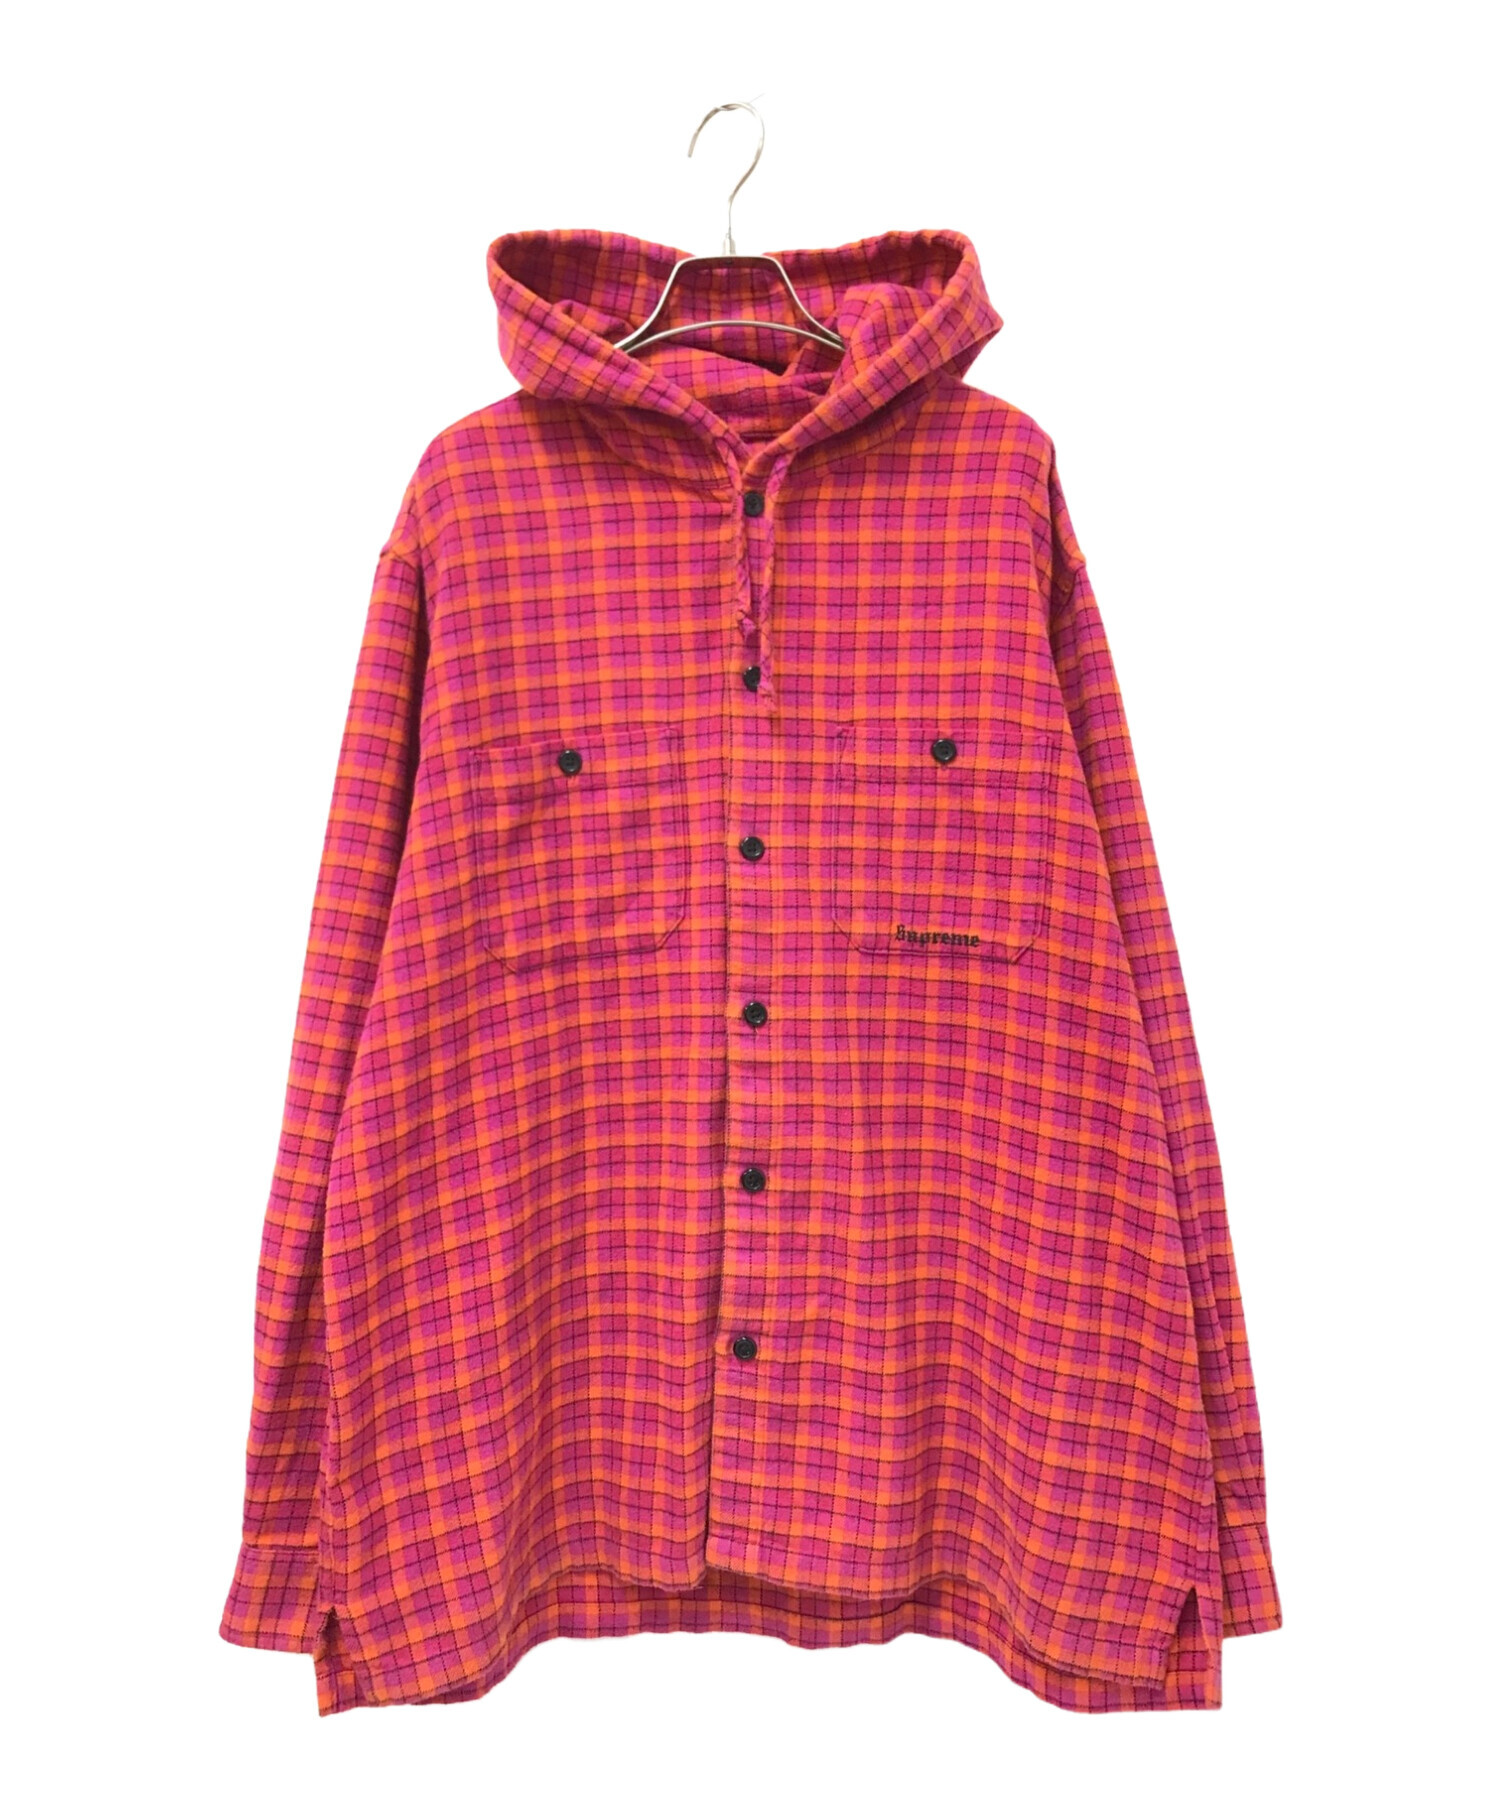 SUPREME (シュプリーム) Mini Plaid Hooded Shirt ピンク×オレンジ サイズ:L